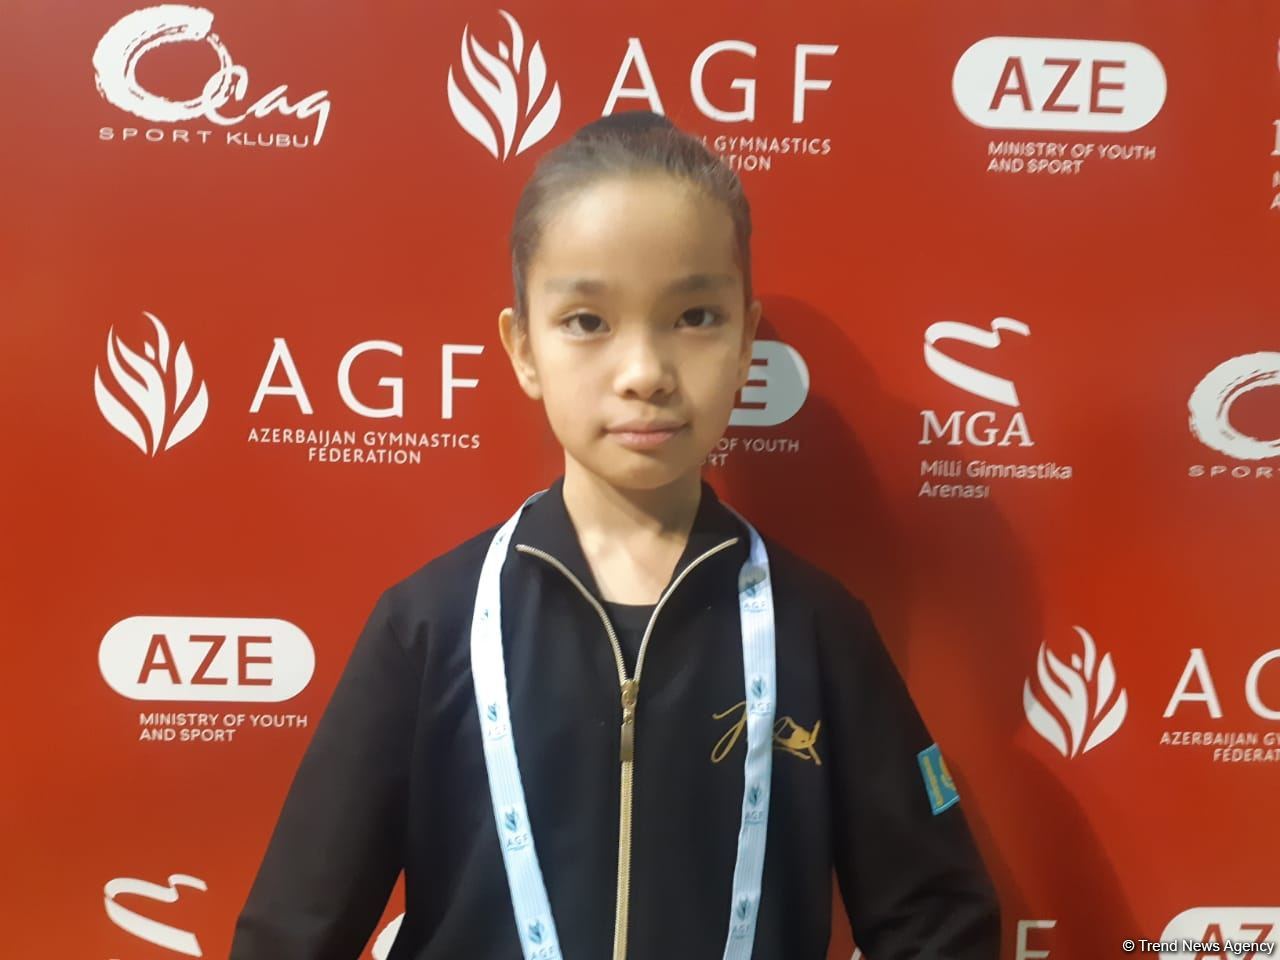 Арена гимнастики в Баку красивая и просторная – юная гимнастка из Казахстана